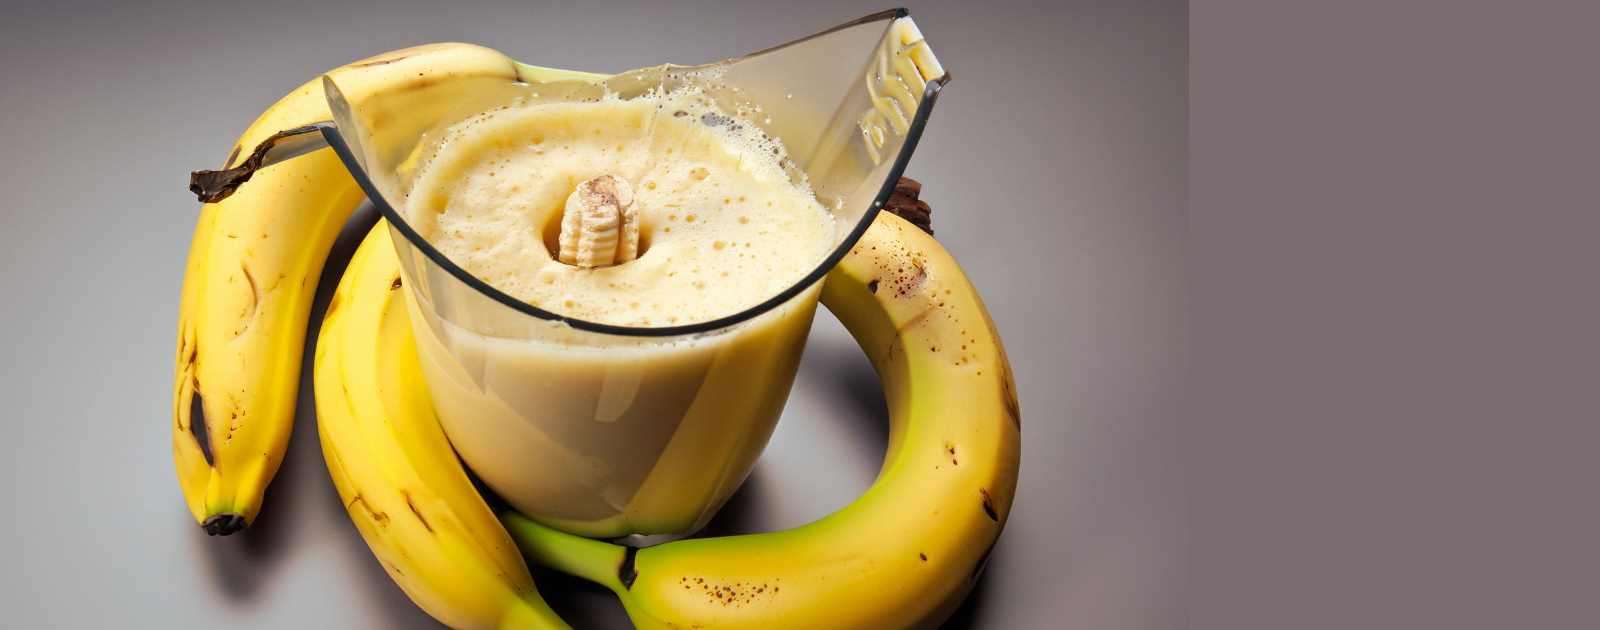 Does Blending a Banana Make It Unhealthy?